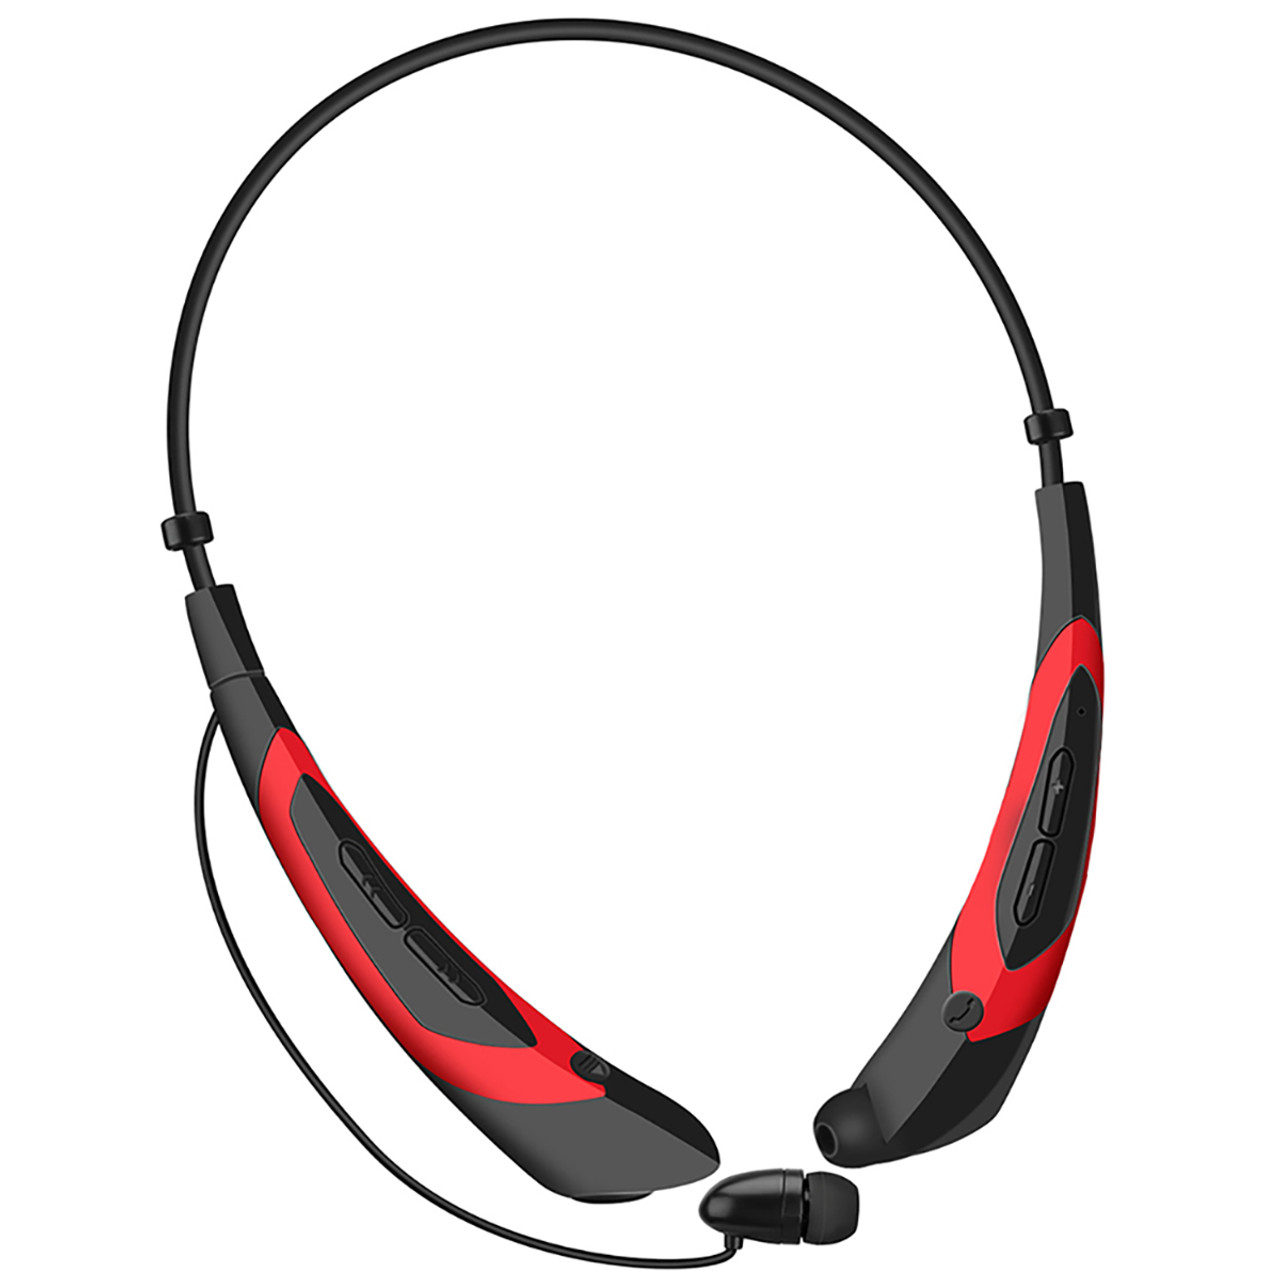 iMounTEK® Wireless Neckband Headphones product image